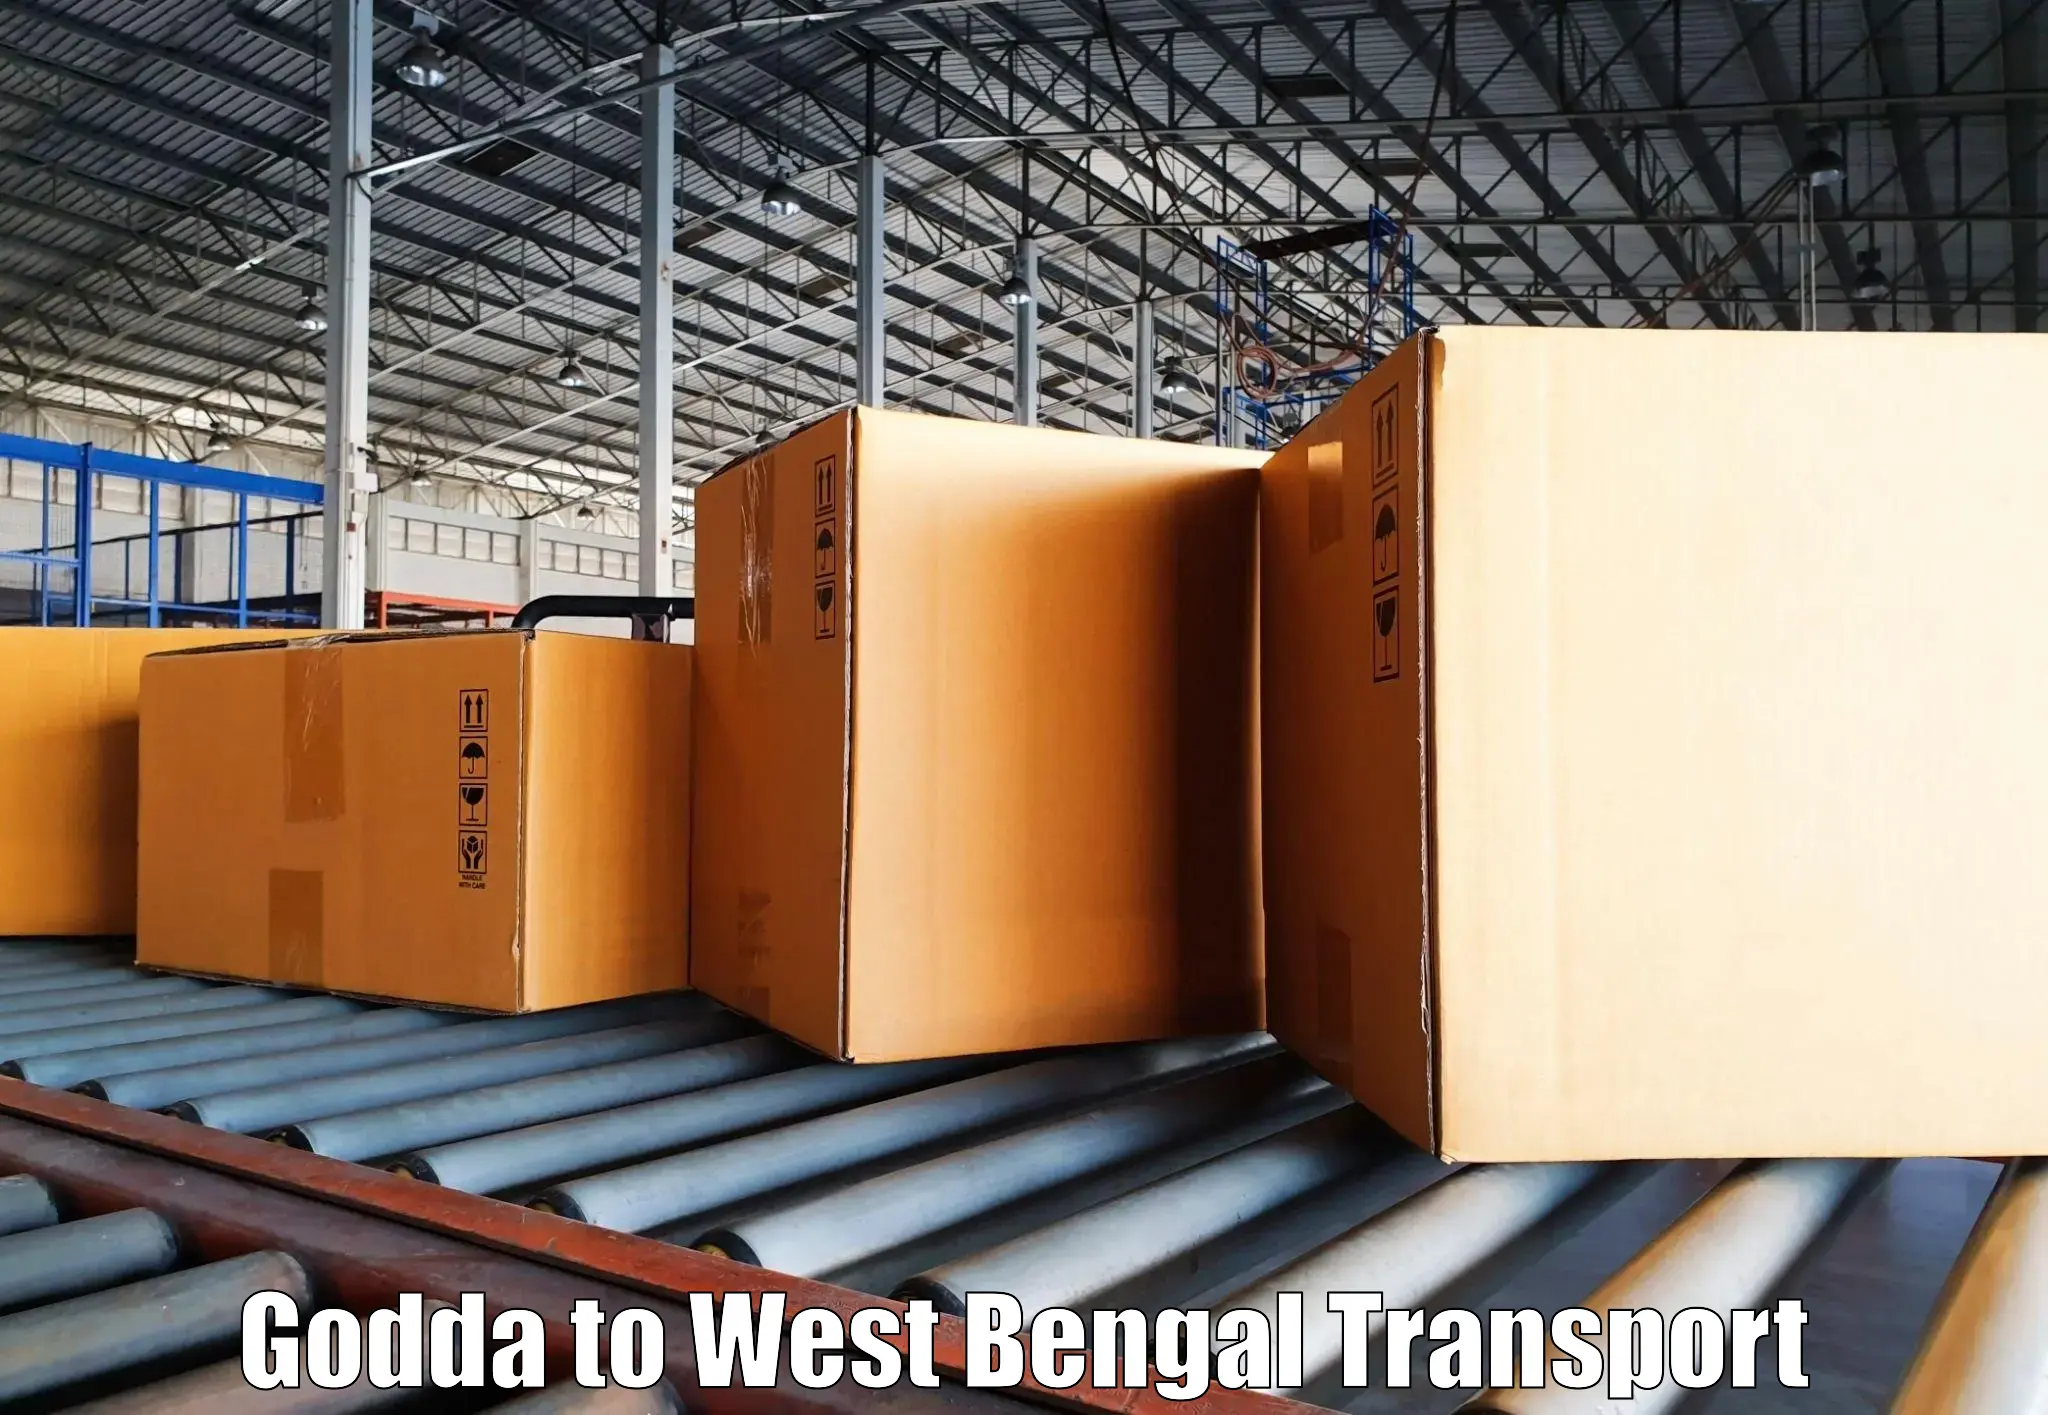 Shipping partner Godda to Egra